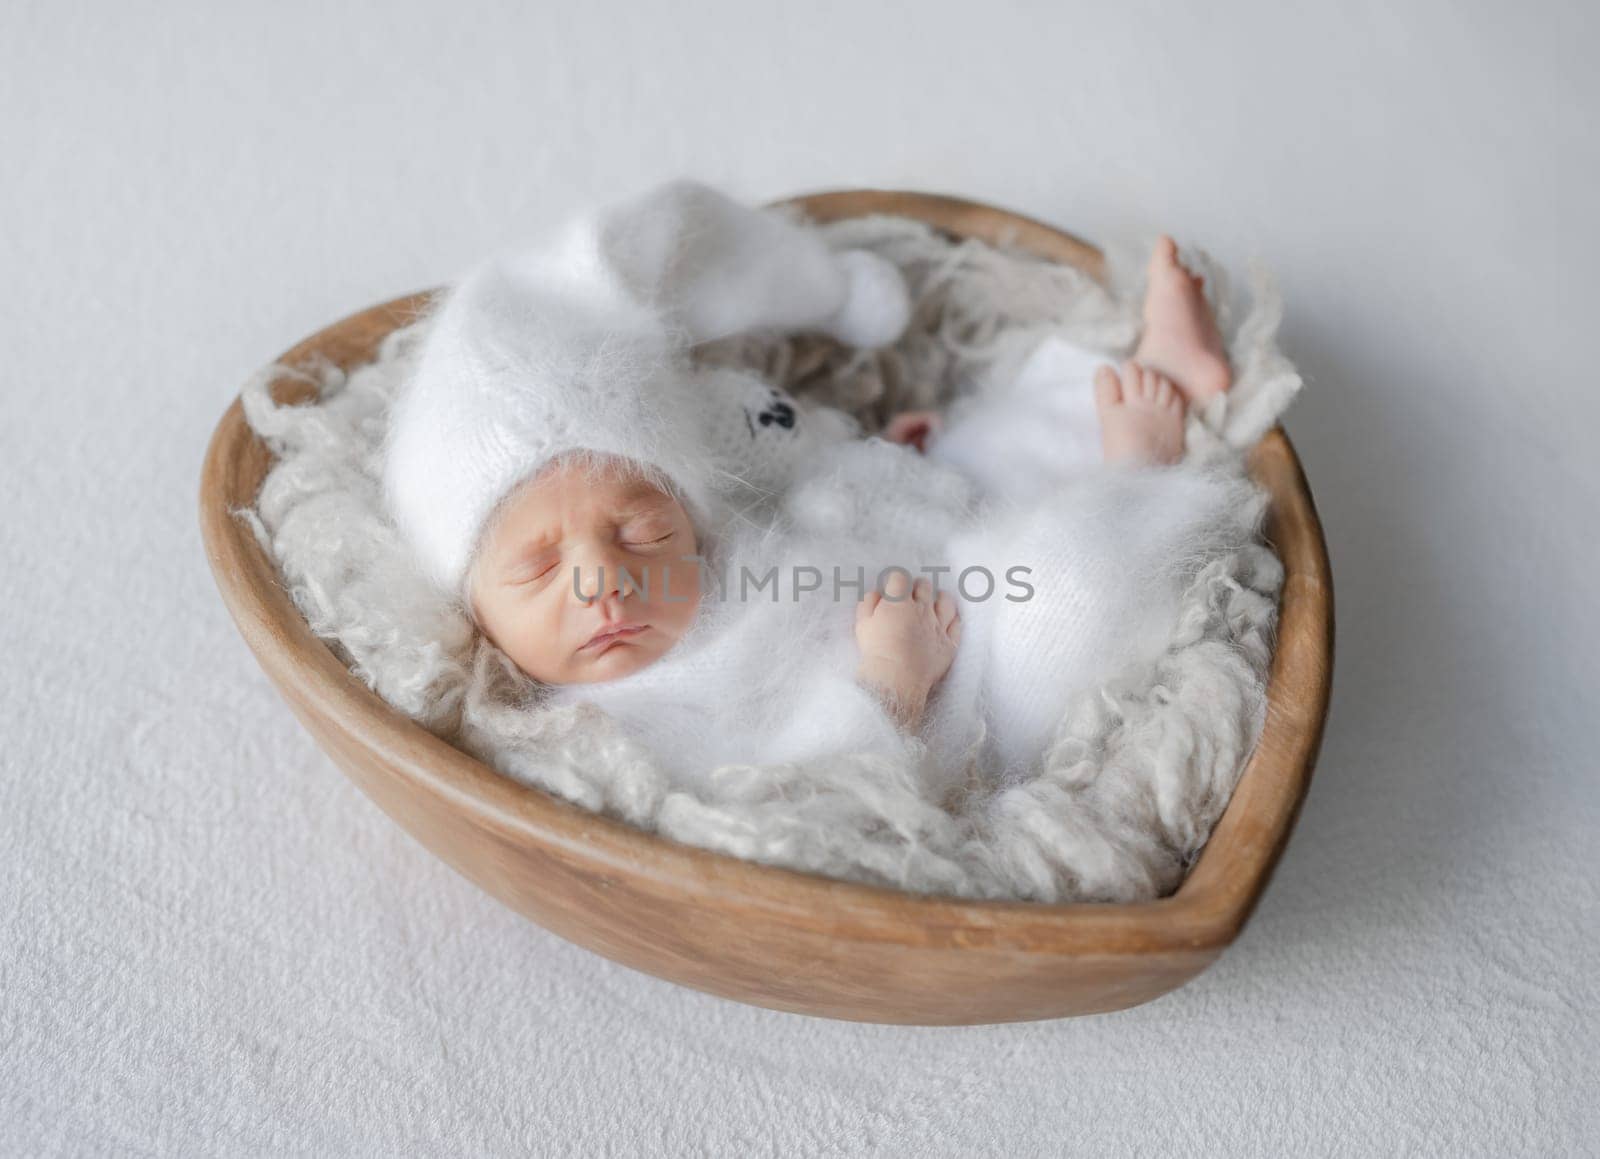 Newborn Baby In White Onesie Sleeps In Heart-Shaped Wooden Bowl by tan4ikk1